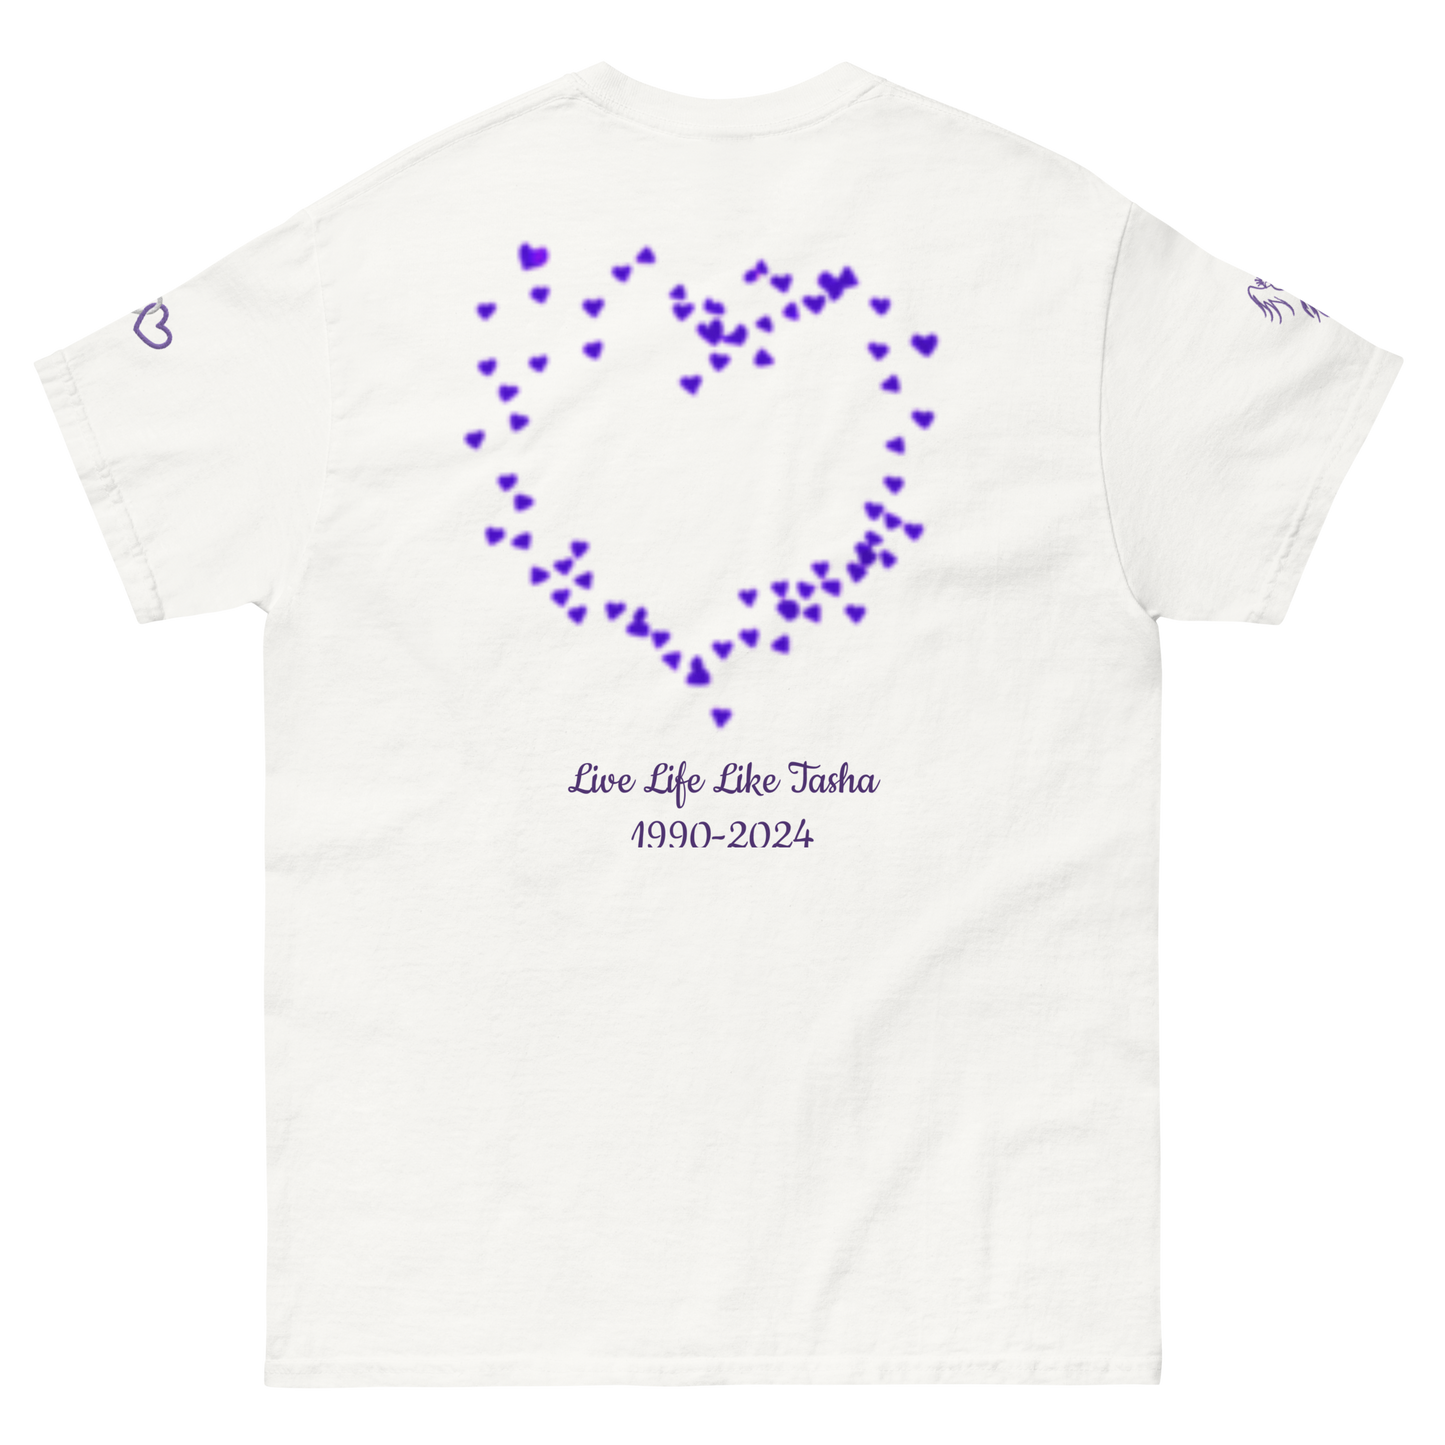 Live Life Like Tasha "Show Love" T-Shirt